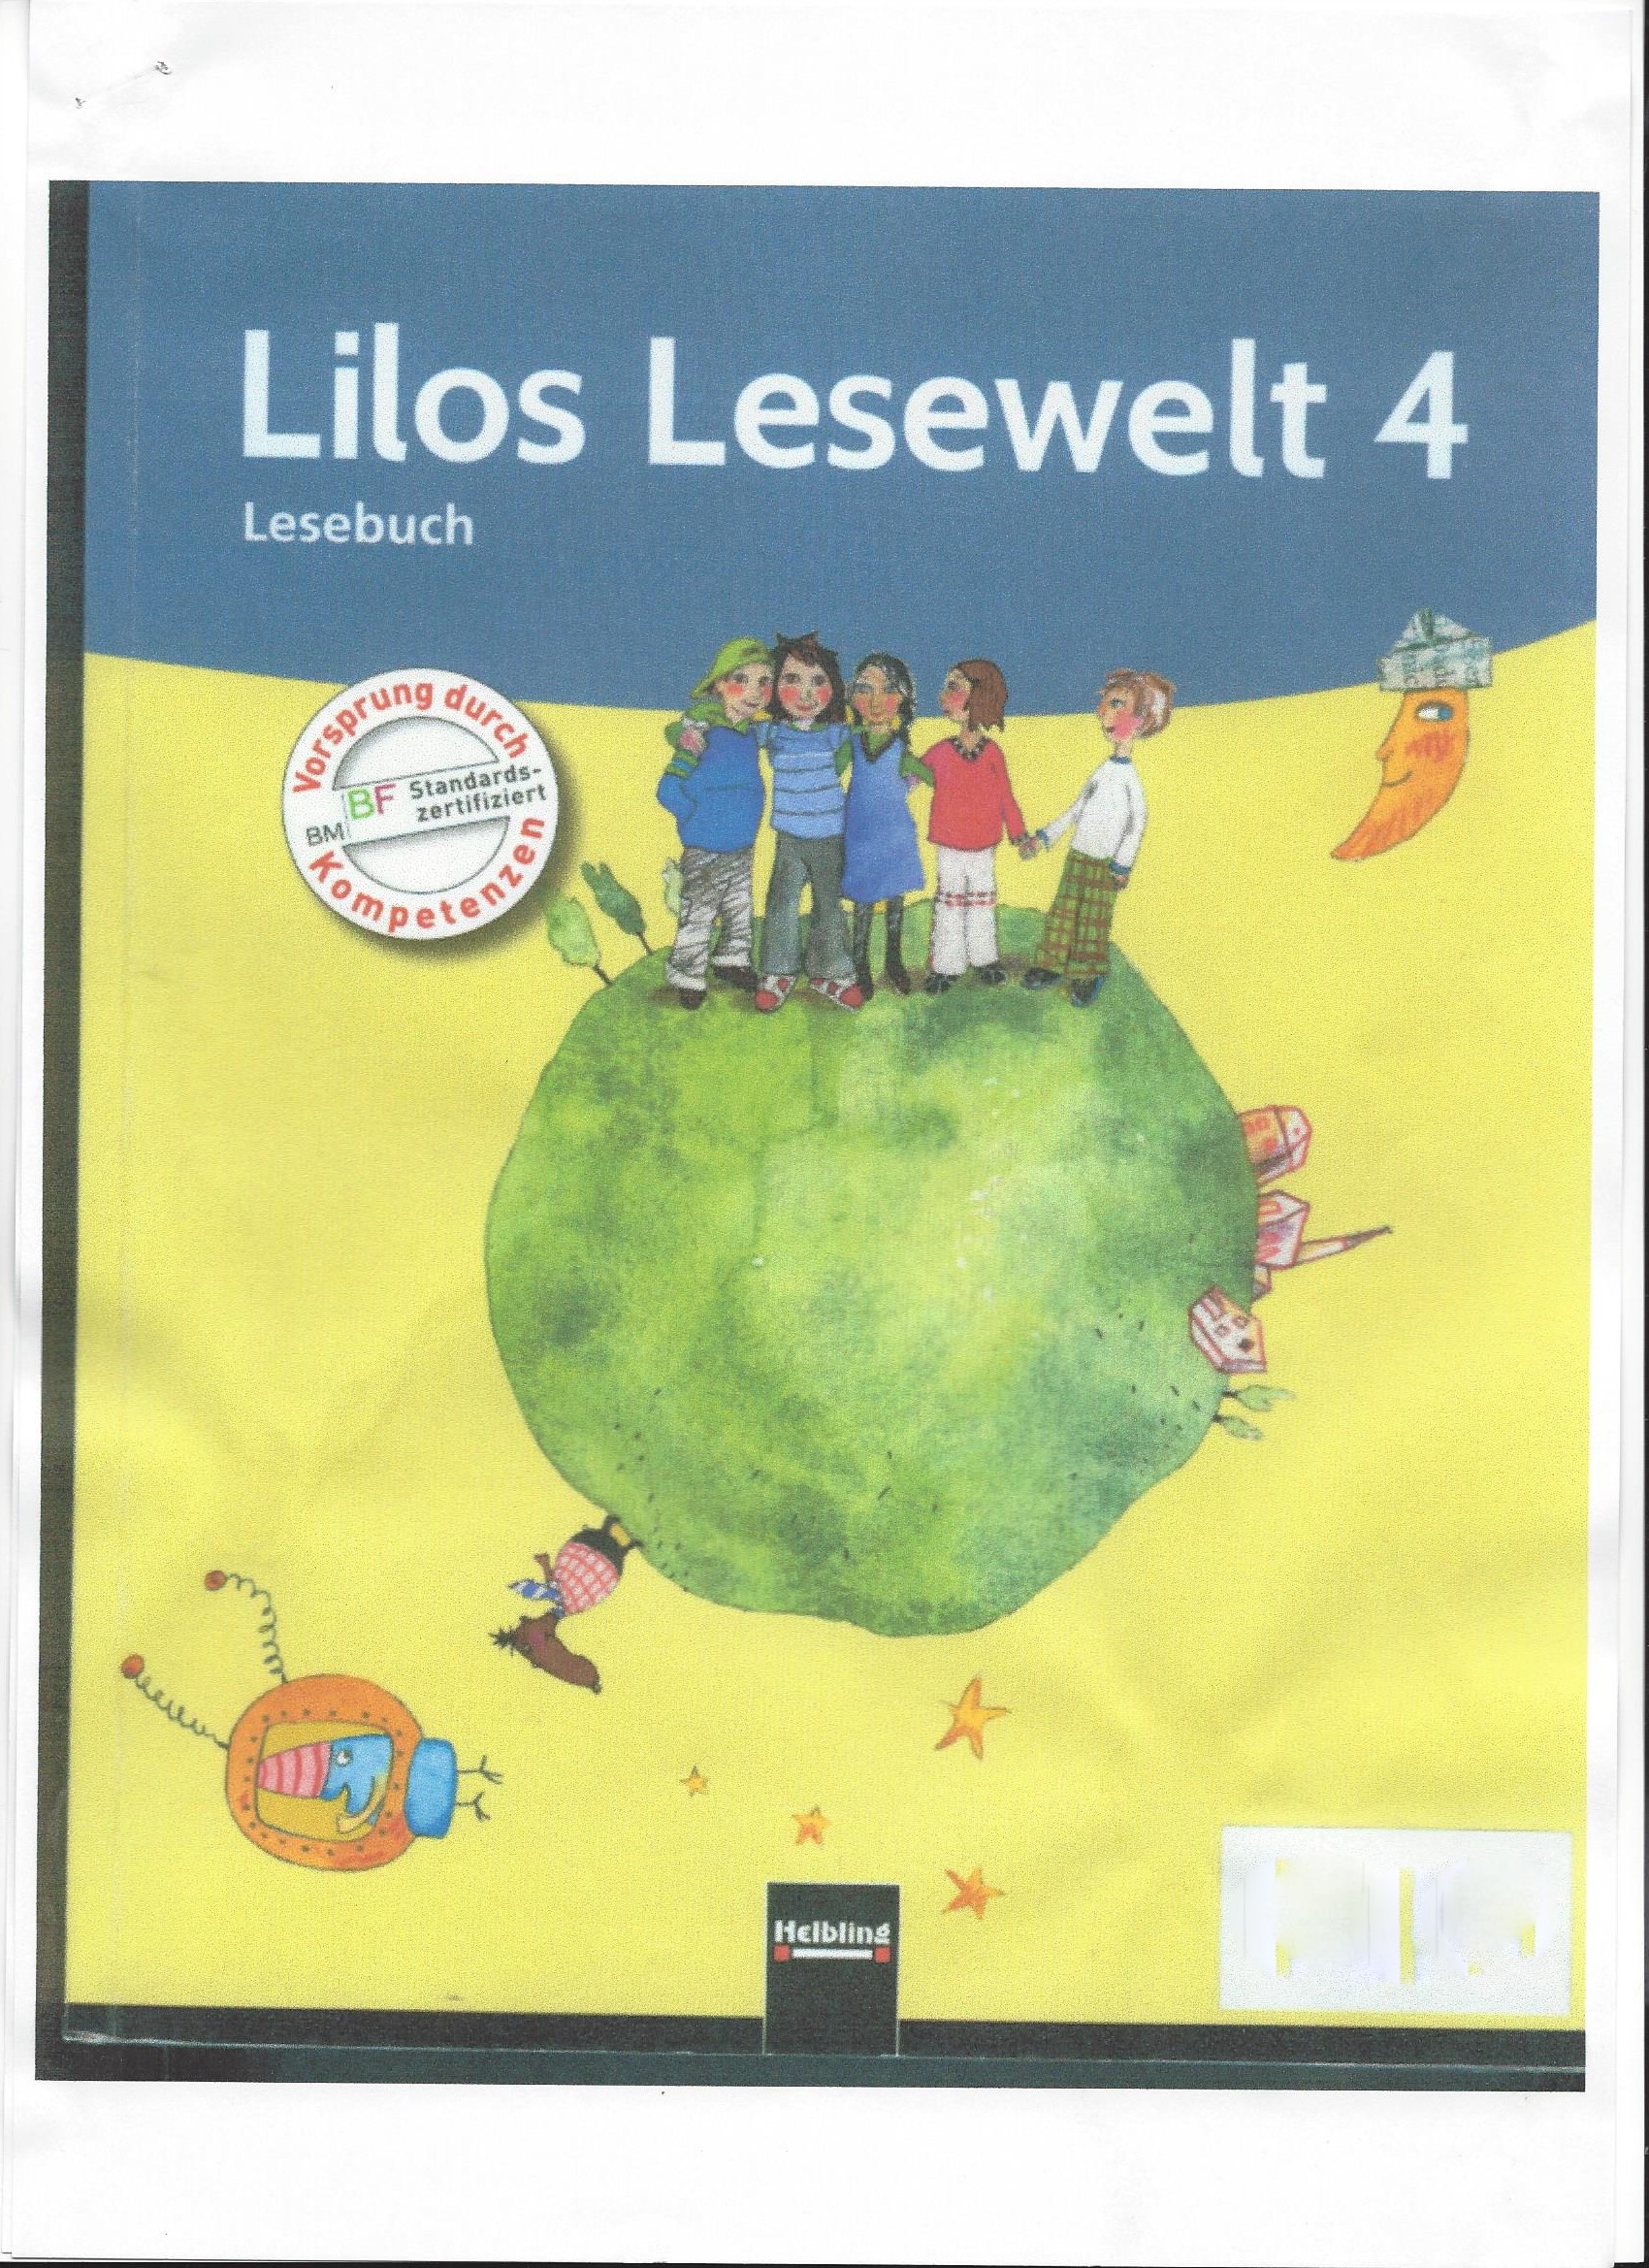 Lilos Lesewelt 4